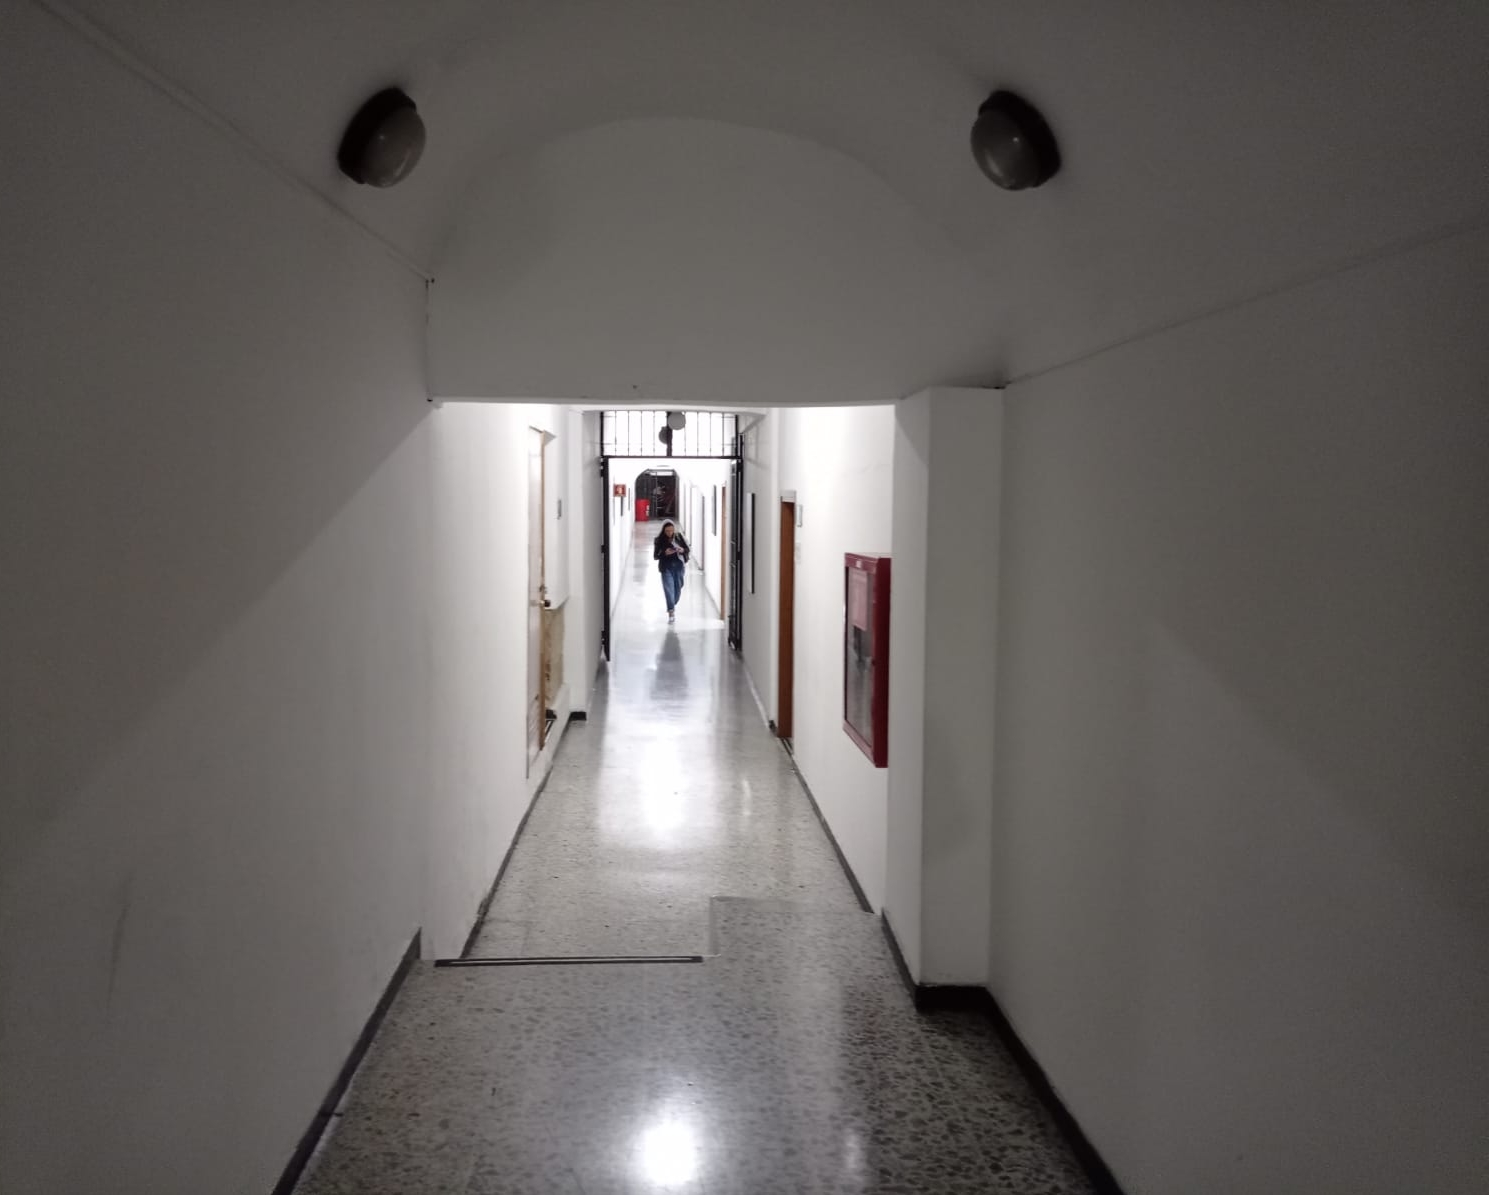 Las blancas paredes que encierran los pasillos de los túneles de la Avenida Jiménez están cargados de historia pasada por la humedad, el moho y la resistencia a desaparecer de la ciudad. 
FOTO: Salvador Arracadas